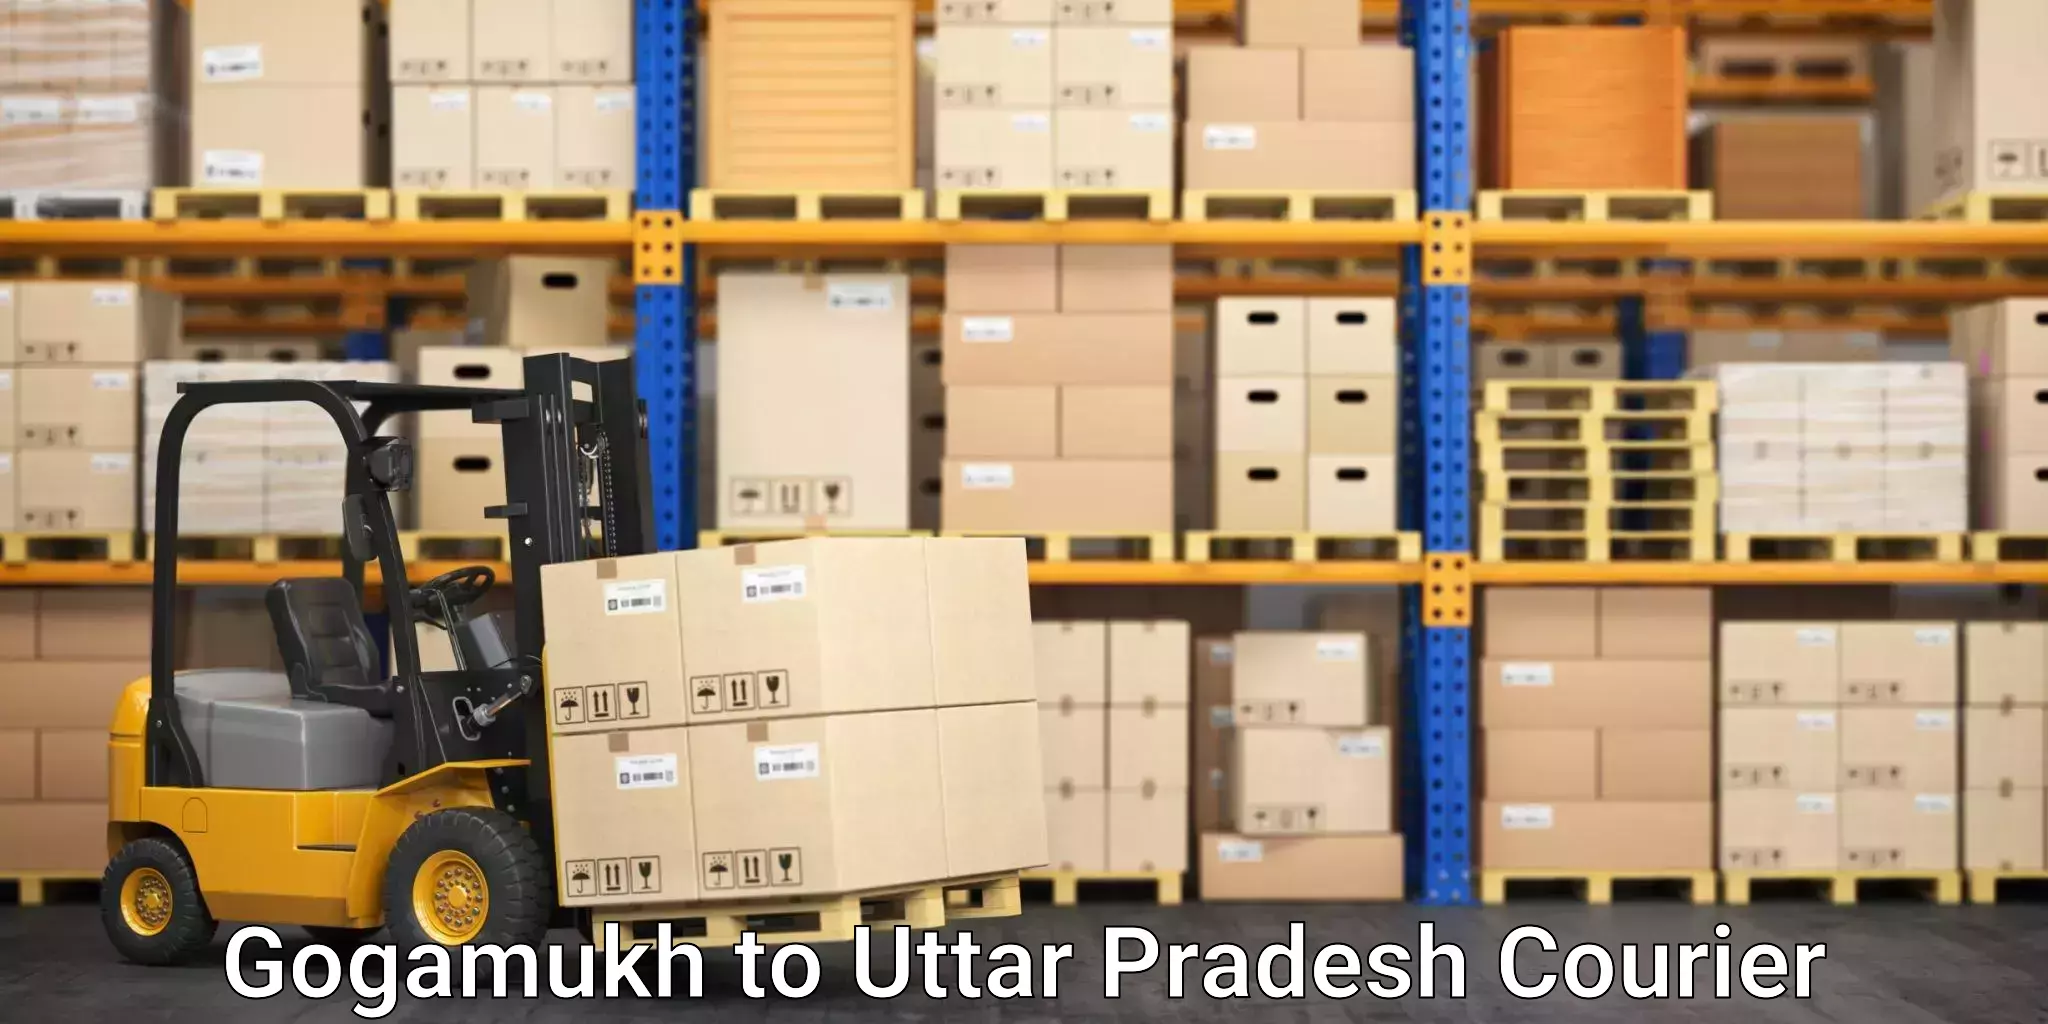 Speedy delivery service in Gogamukh to Uttar Pradesh